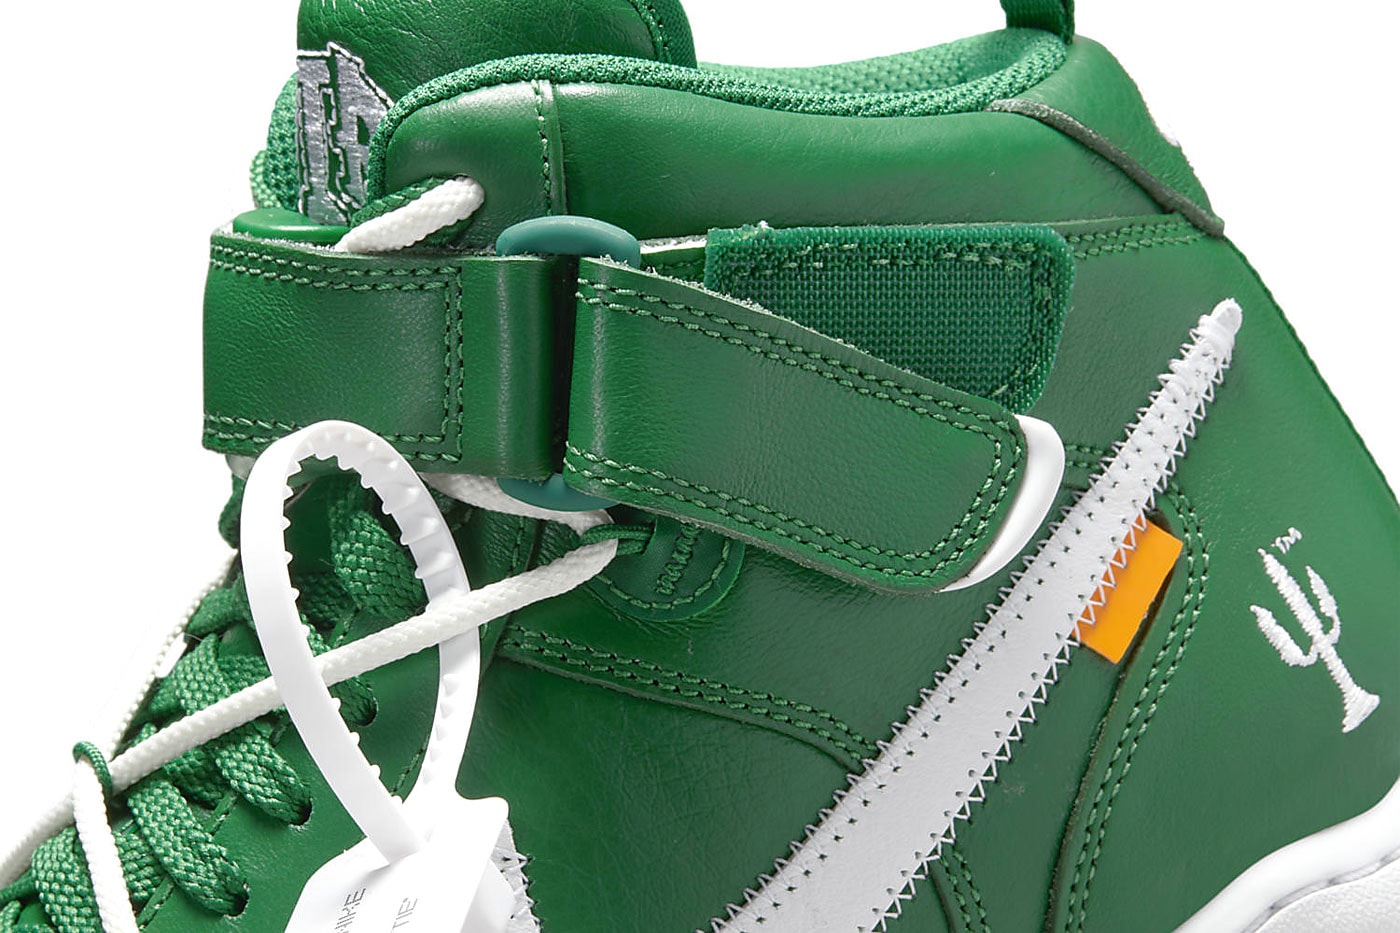 オフホワイト x ナイキエアフォース 1 ミッドから新色 “Pine Green” が登場 Off-White™ Nike Air Force 1 Mid Pine Green Official Look Release Info DR0500-300 Date Buy Price 